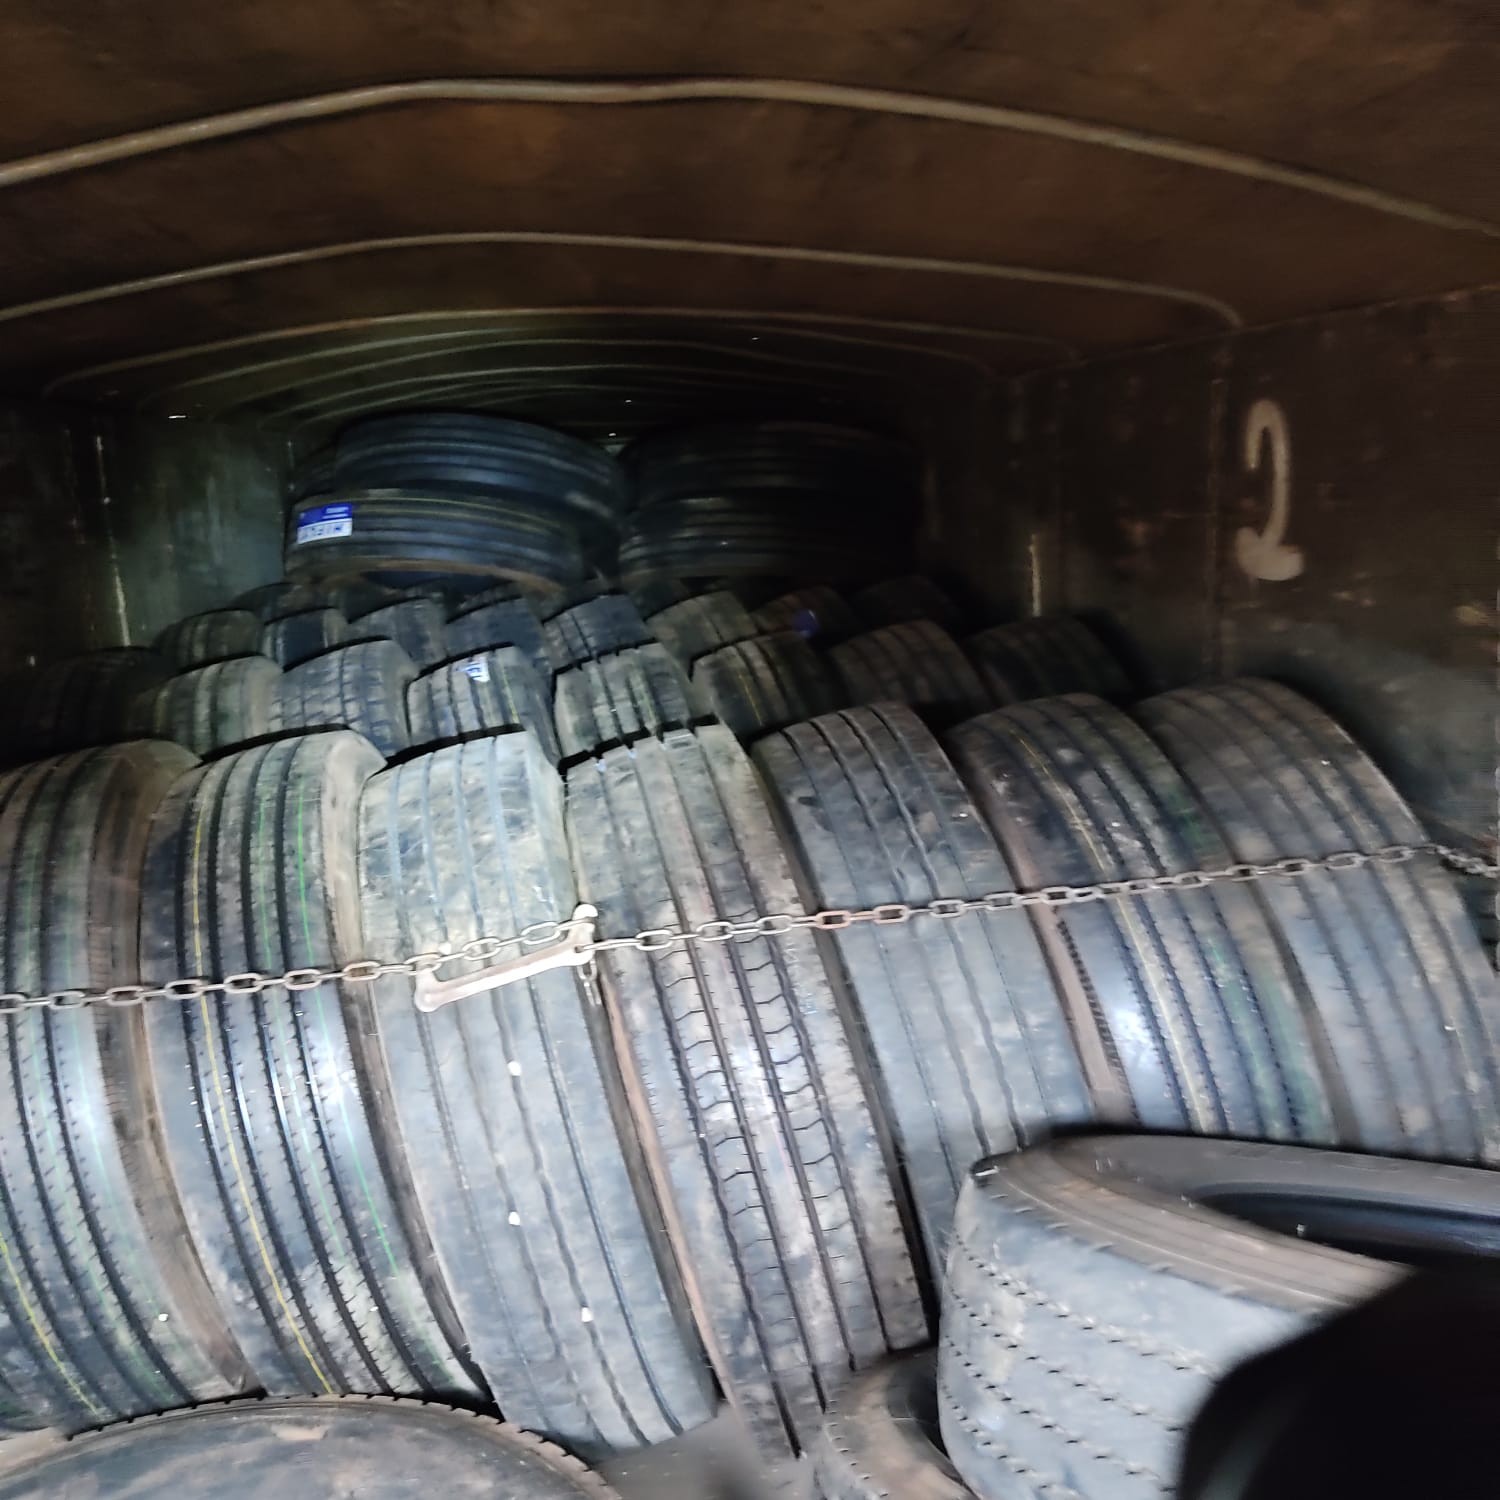 Motorista é preso com mais de 100 pneus contrabandeados escondidos em carreta em Toledo, diz polícia 